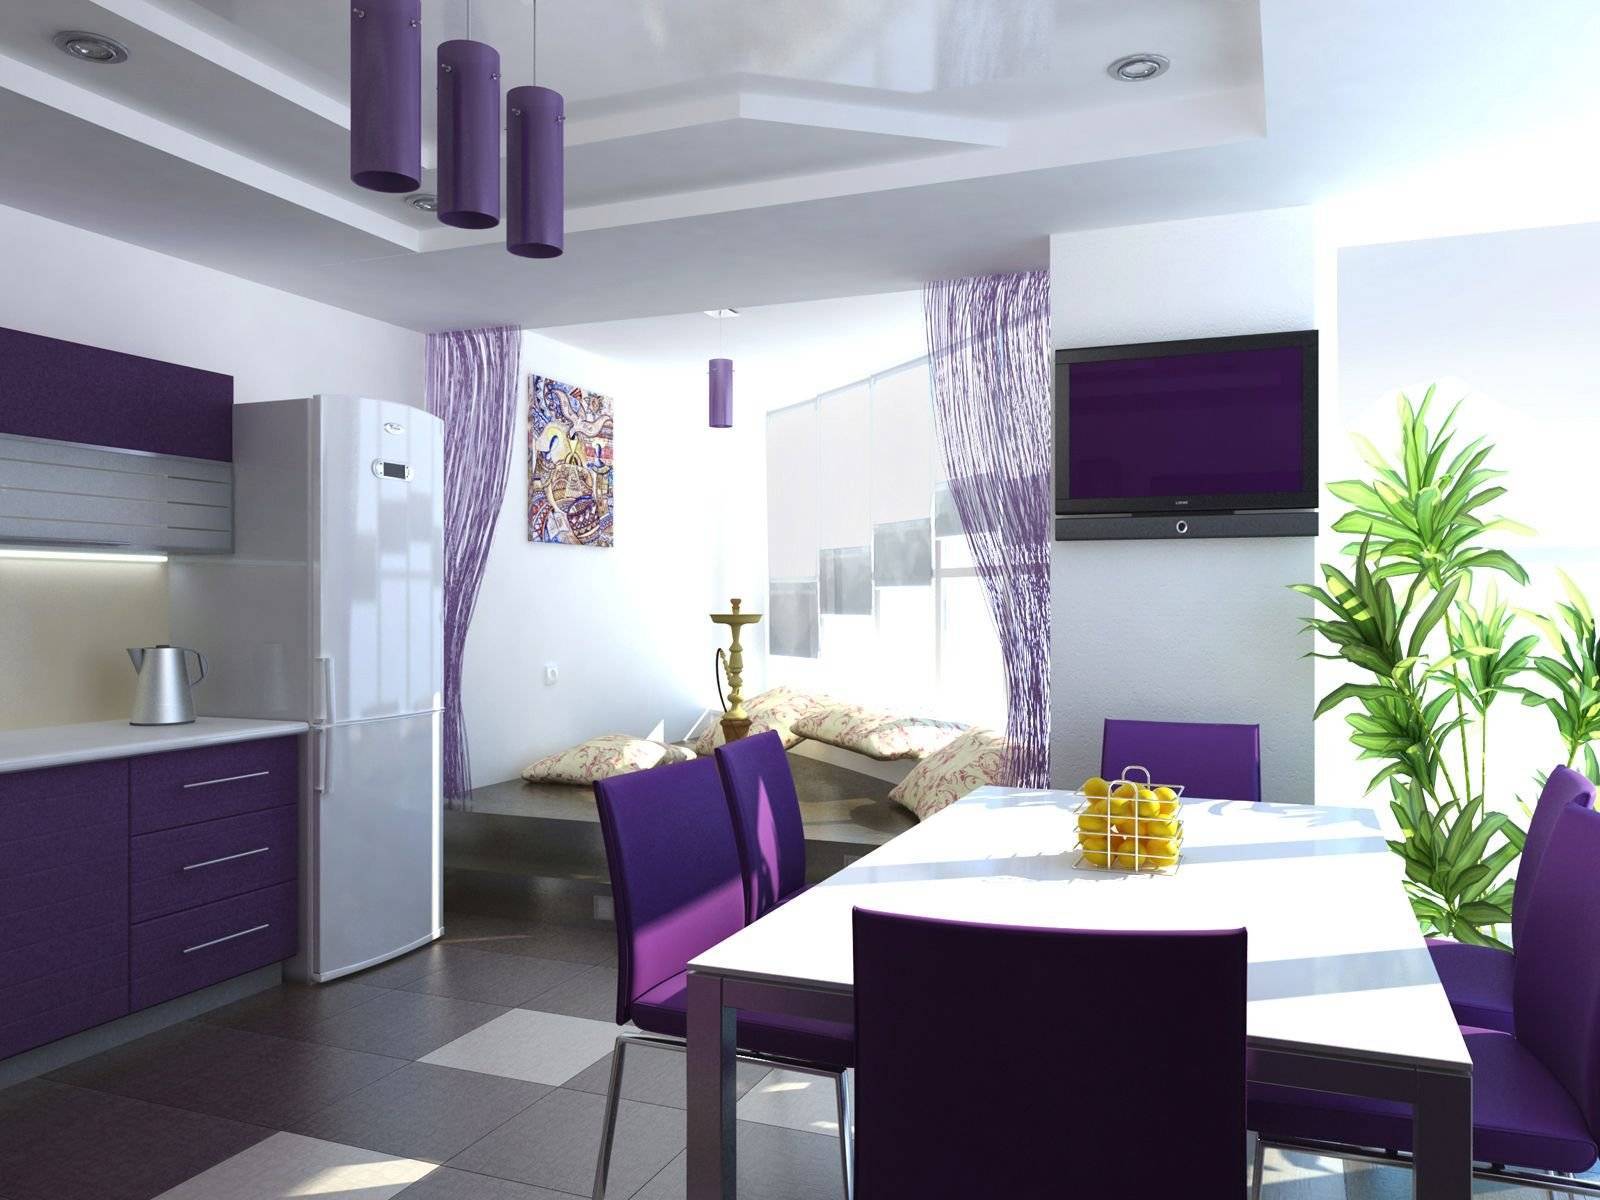 Интерьер фиолетовой кухни: как создать кухню своей мечты со вкусом